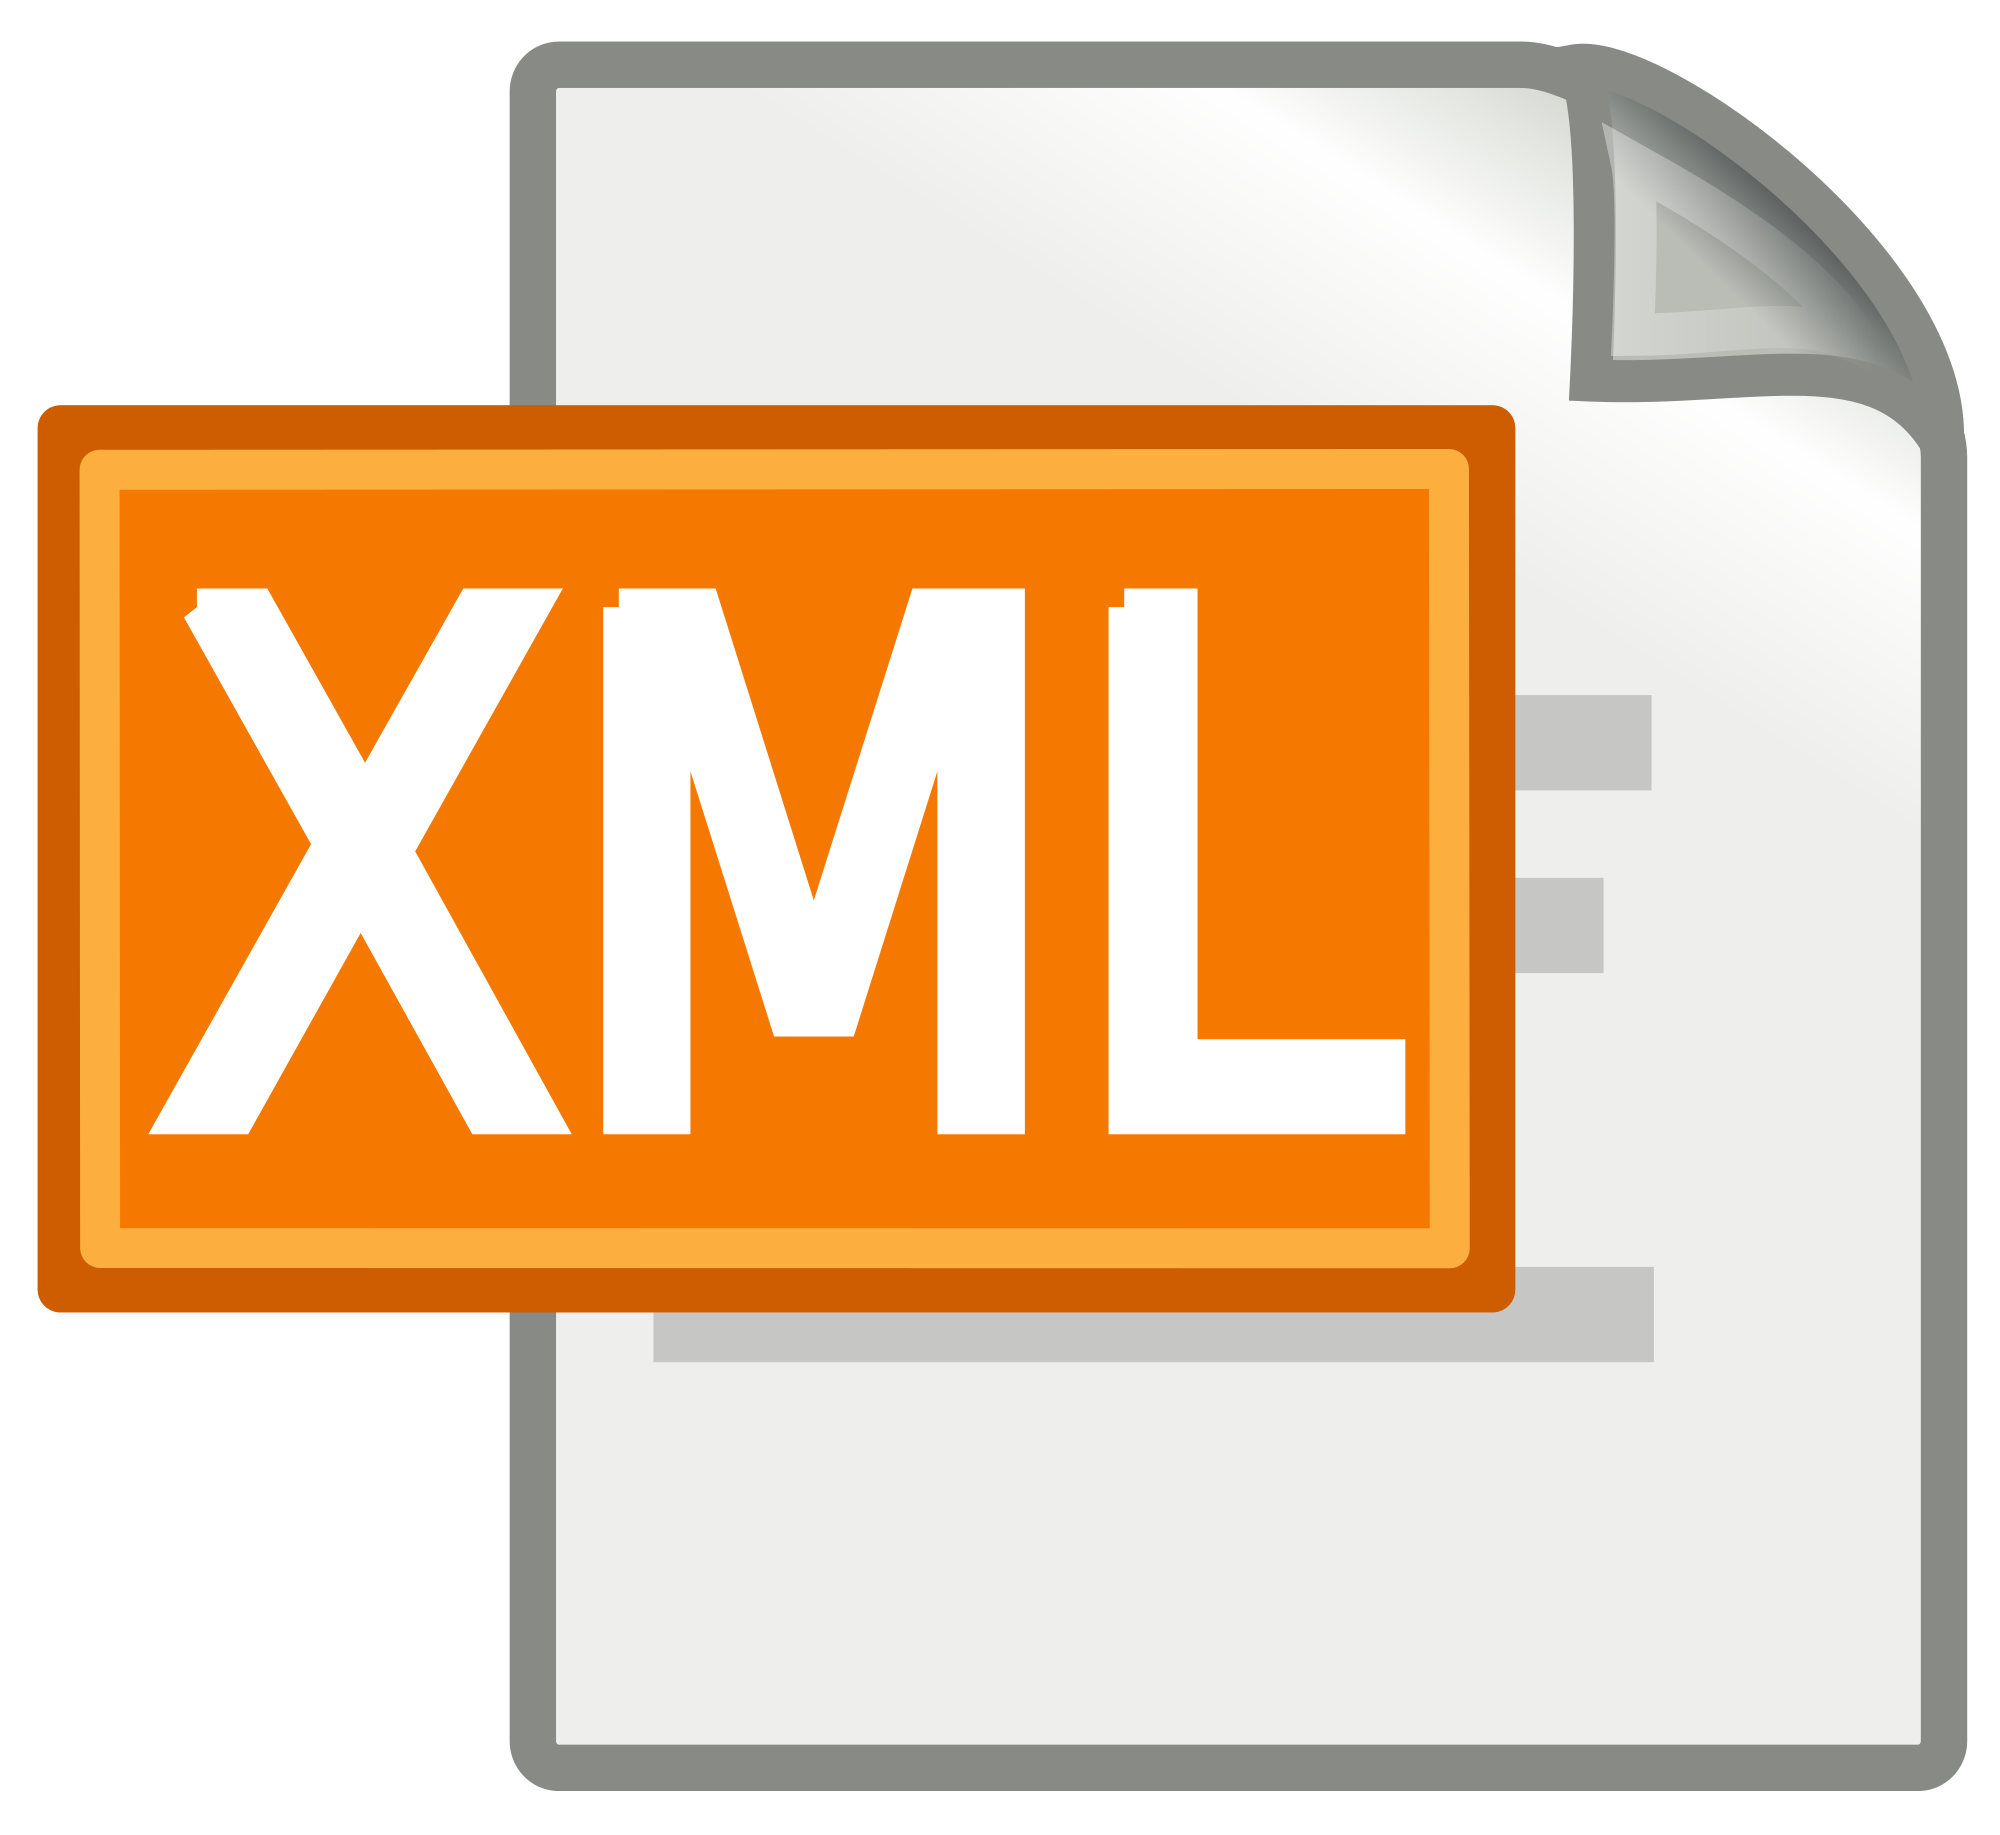 File XML là gì và ưu và nhược điểm của File XML như thế nào?